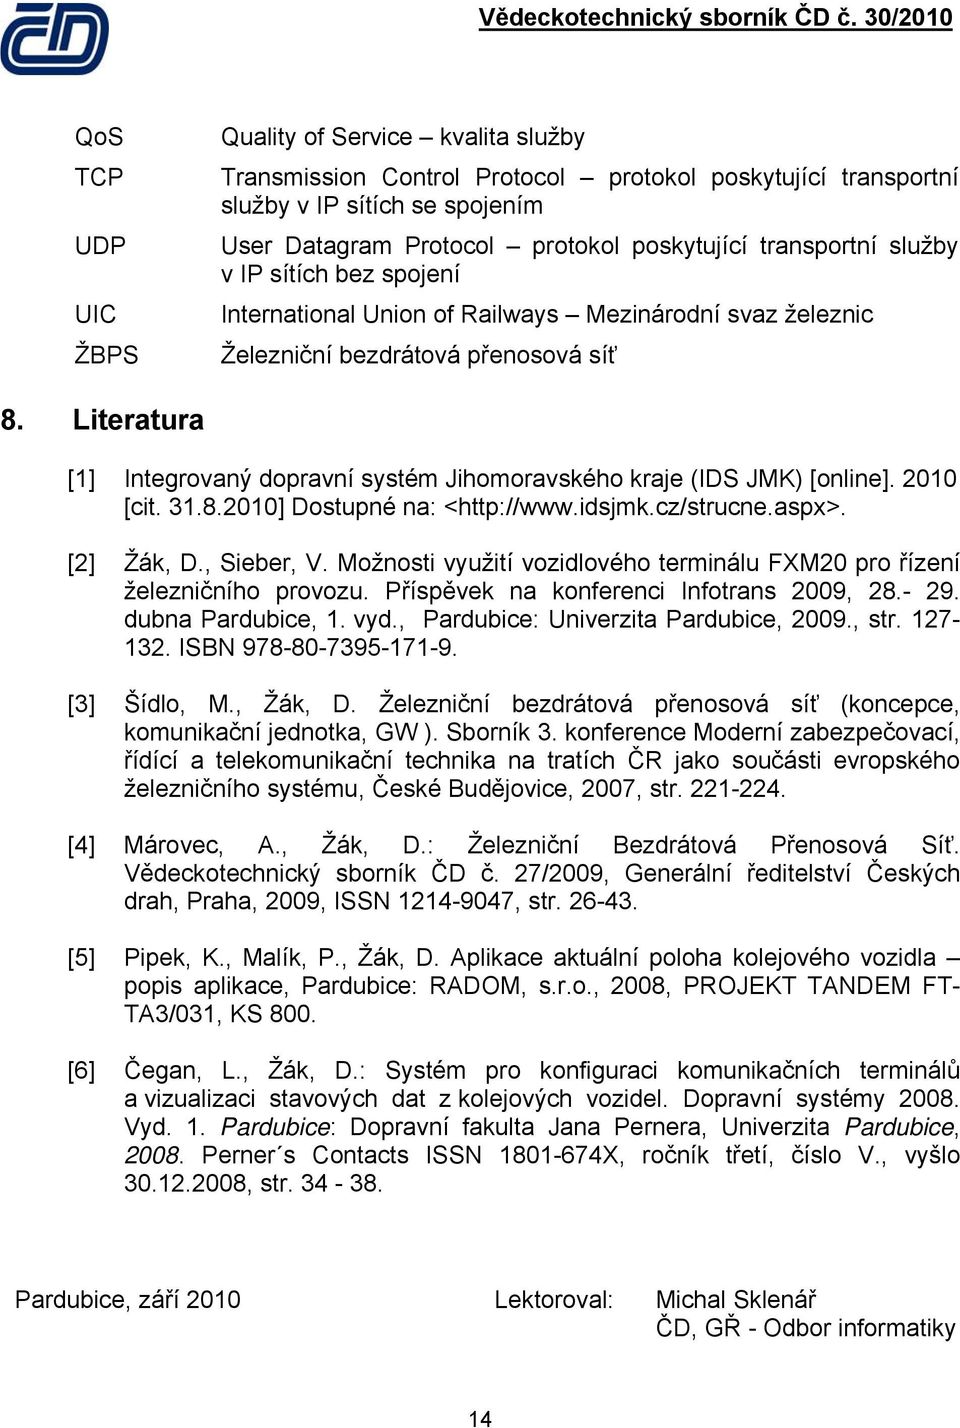 Literatura [1] Integrovaný dopravní systém Jihomoravského kraje (IDS JMK) [online]. 2010 [cit. 31.8.2010] Dostupné na: <http://www.idsjmk.cz/strucne.aspx>. [2] Žák, D., Sieber, V.